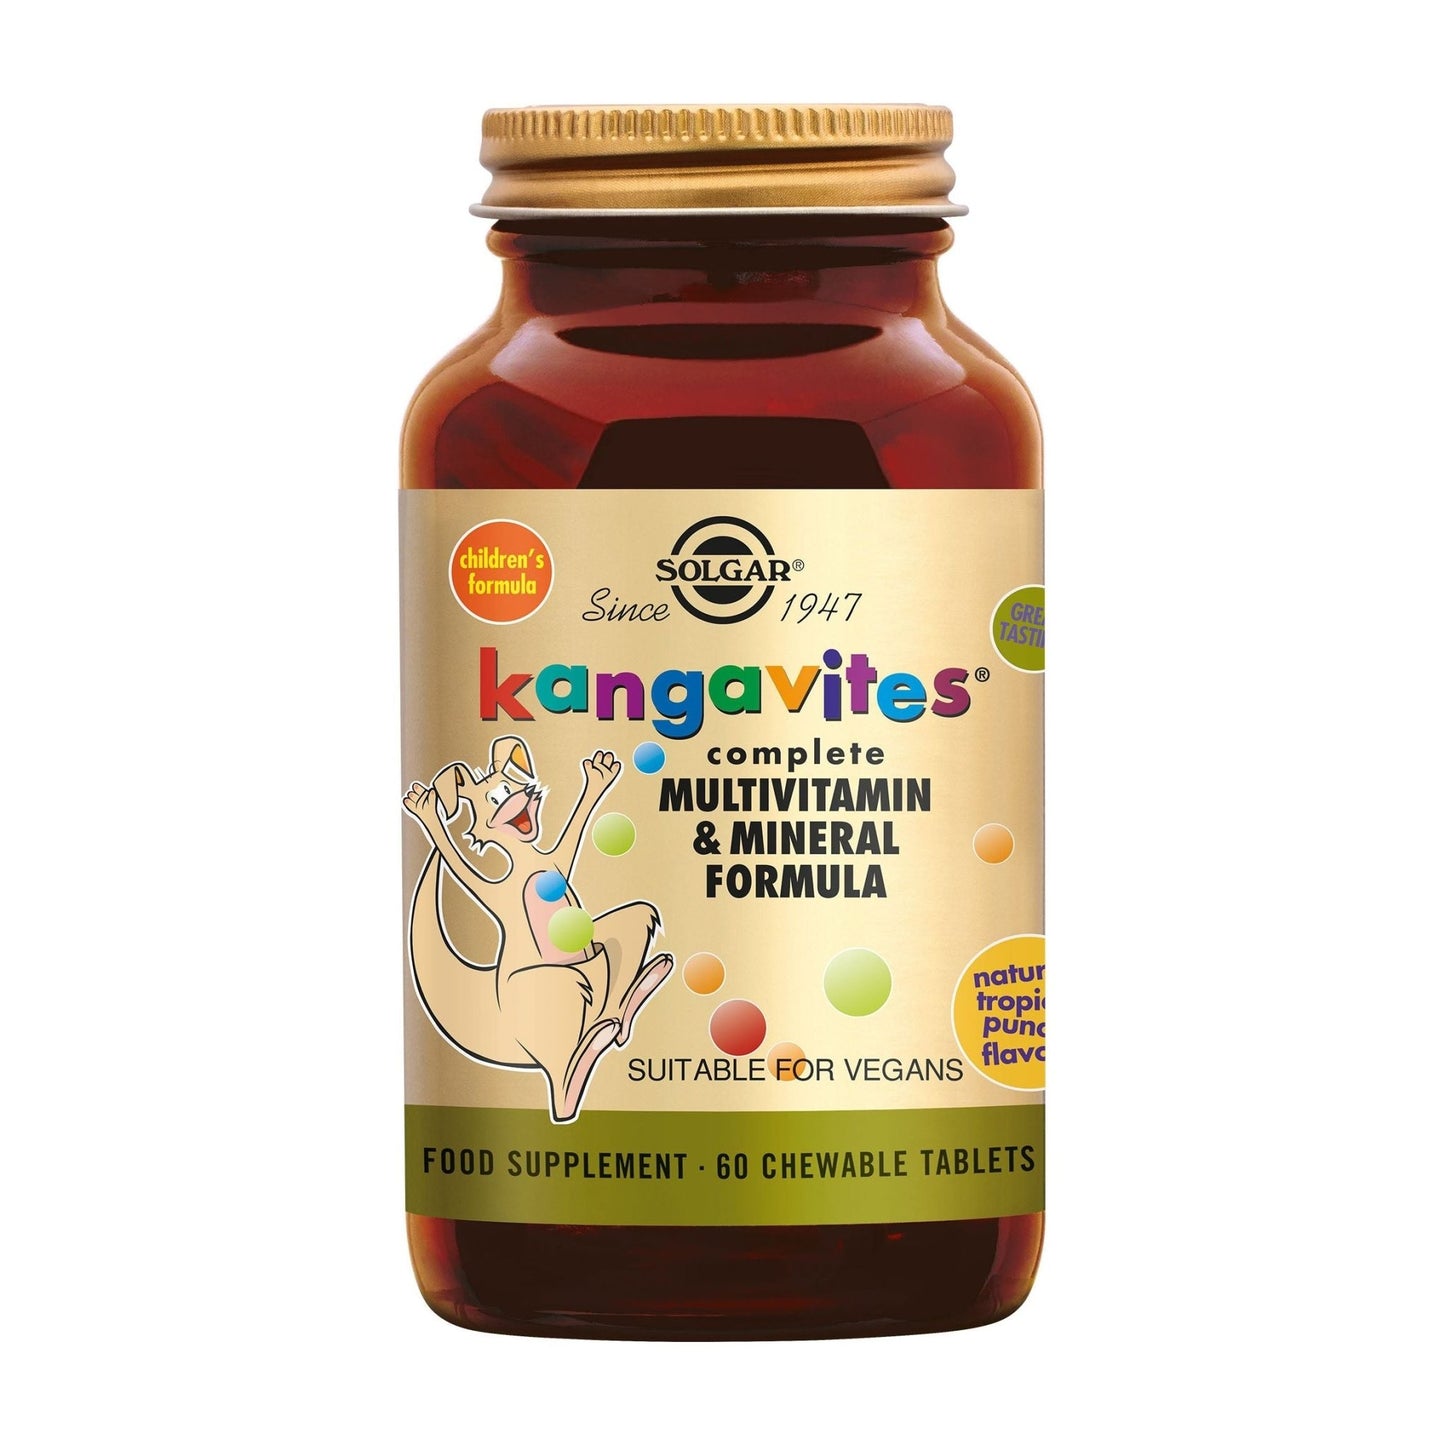 Kangavites™ Tropical Punch Multivitamine kauwtabletten voor Kinderen Supplement Solgar   